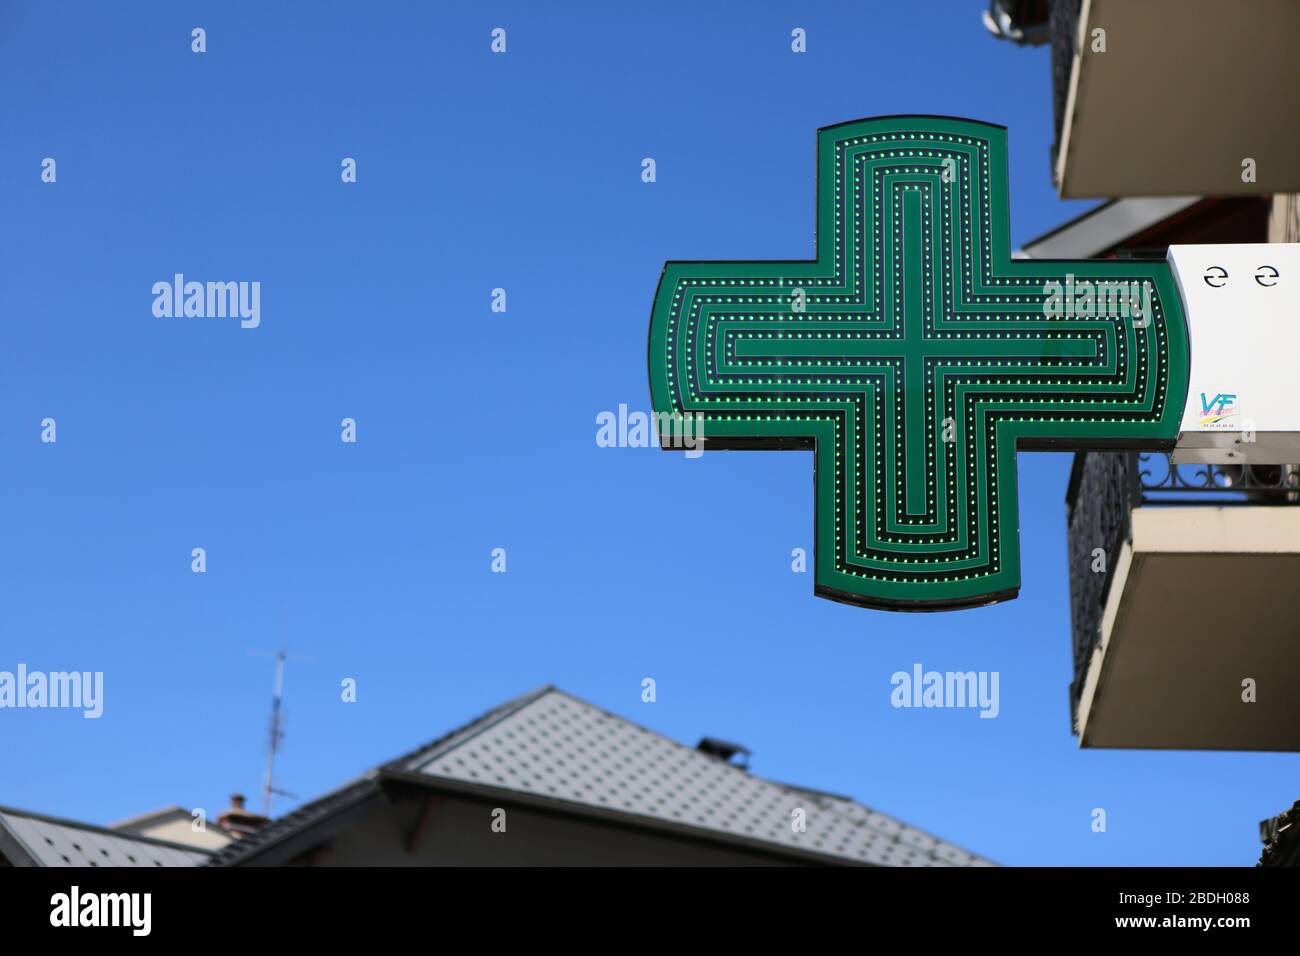 Enseigne de pharmacie. Panneau vert en forme de croix. Centre-ville. Saint-Gervais-les-Bains. Haute-Savoie. France. Stock Photo